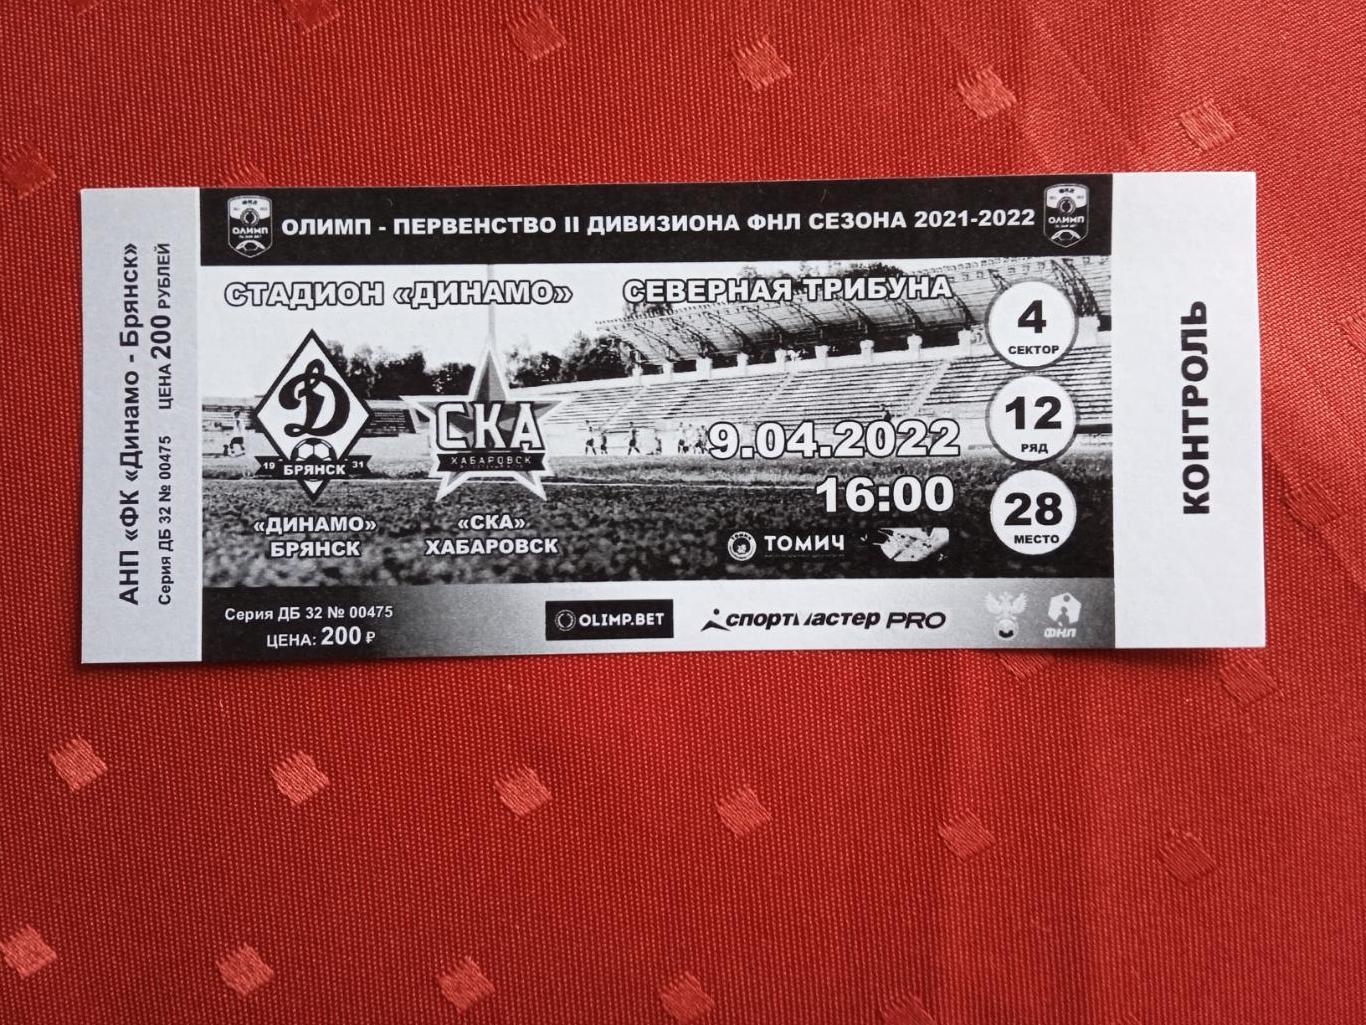 Билет на матч Динамо Брянск - СКА Хабаровск-2 9.04.2022.